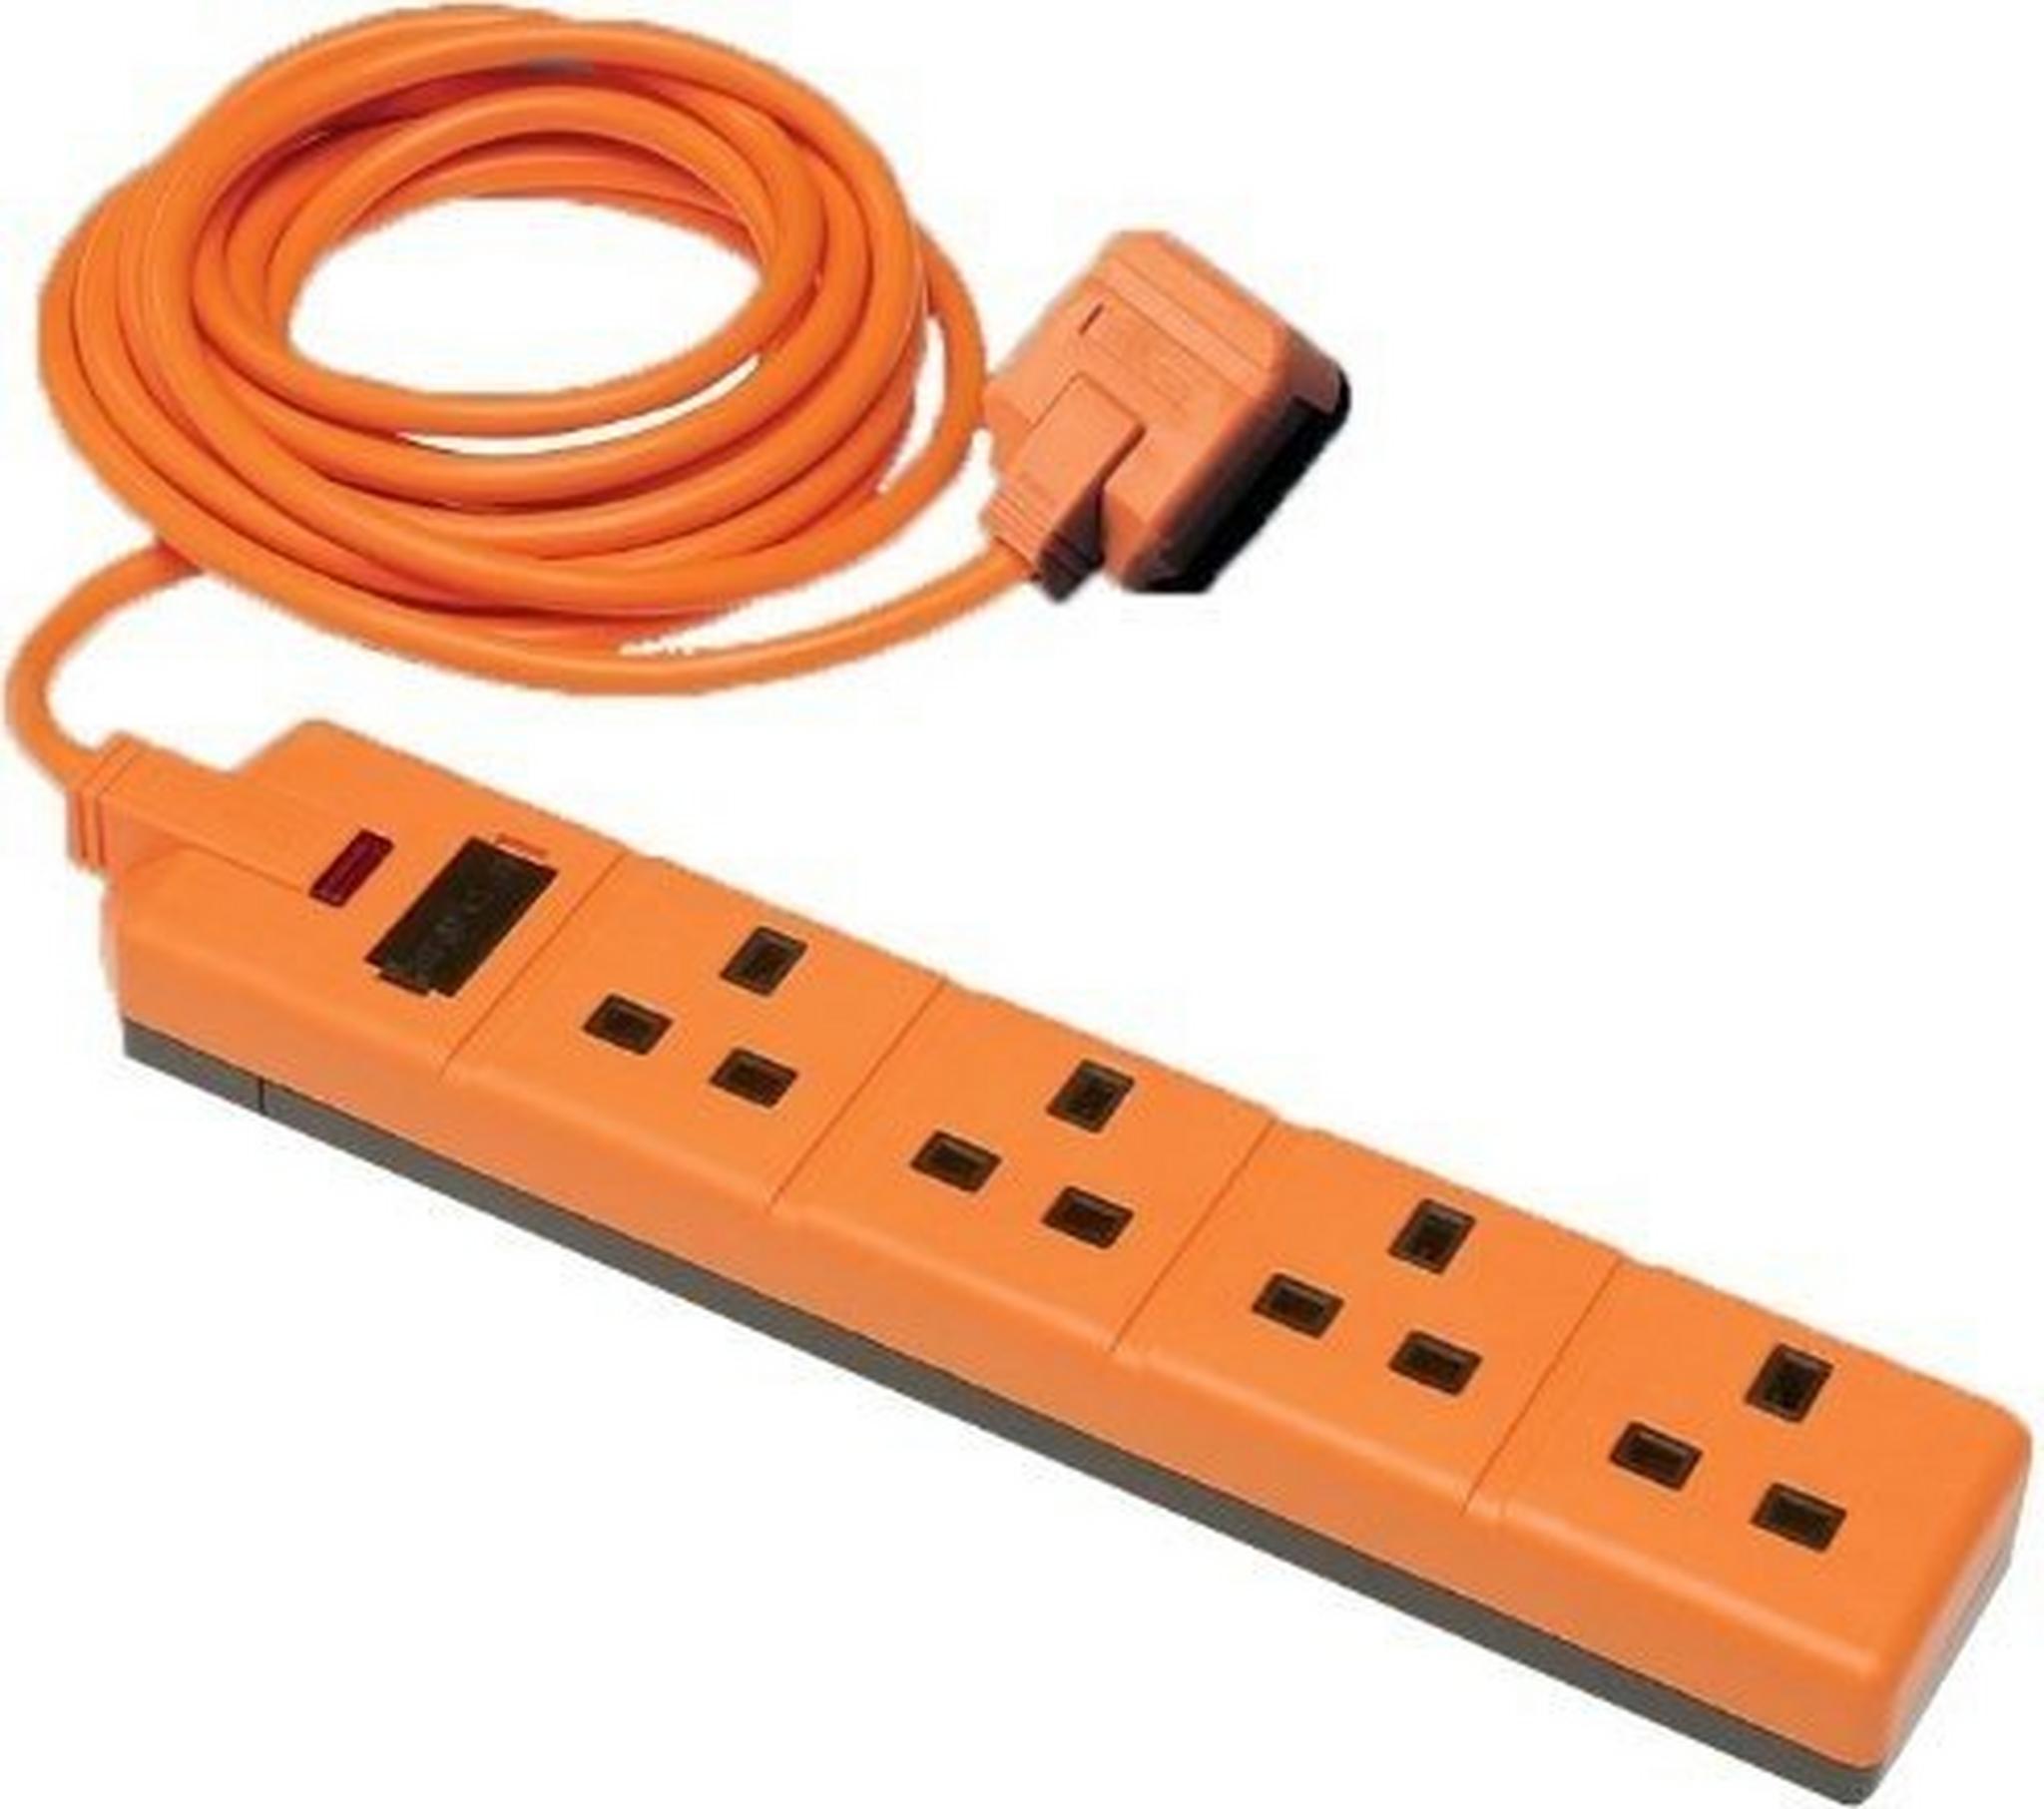 وصلة كهربائية من بيرمابلج-اللون البرتقالي